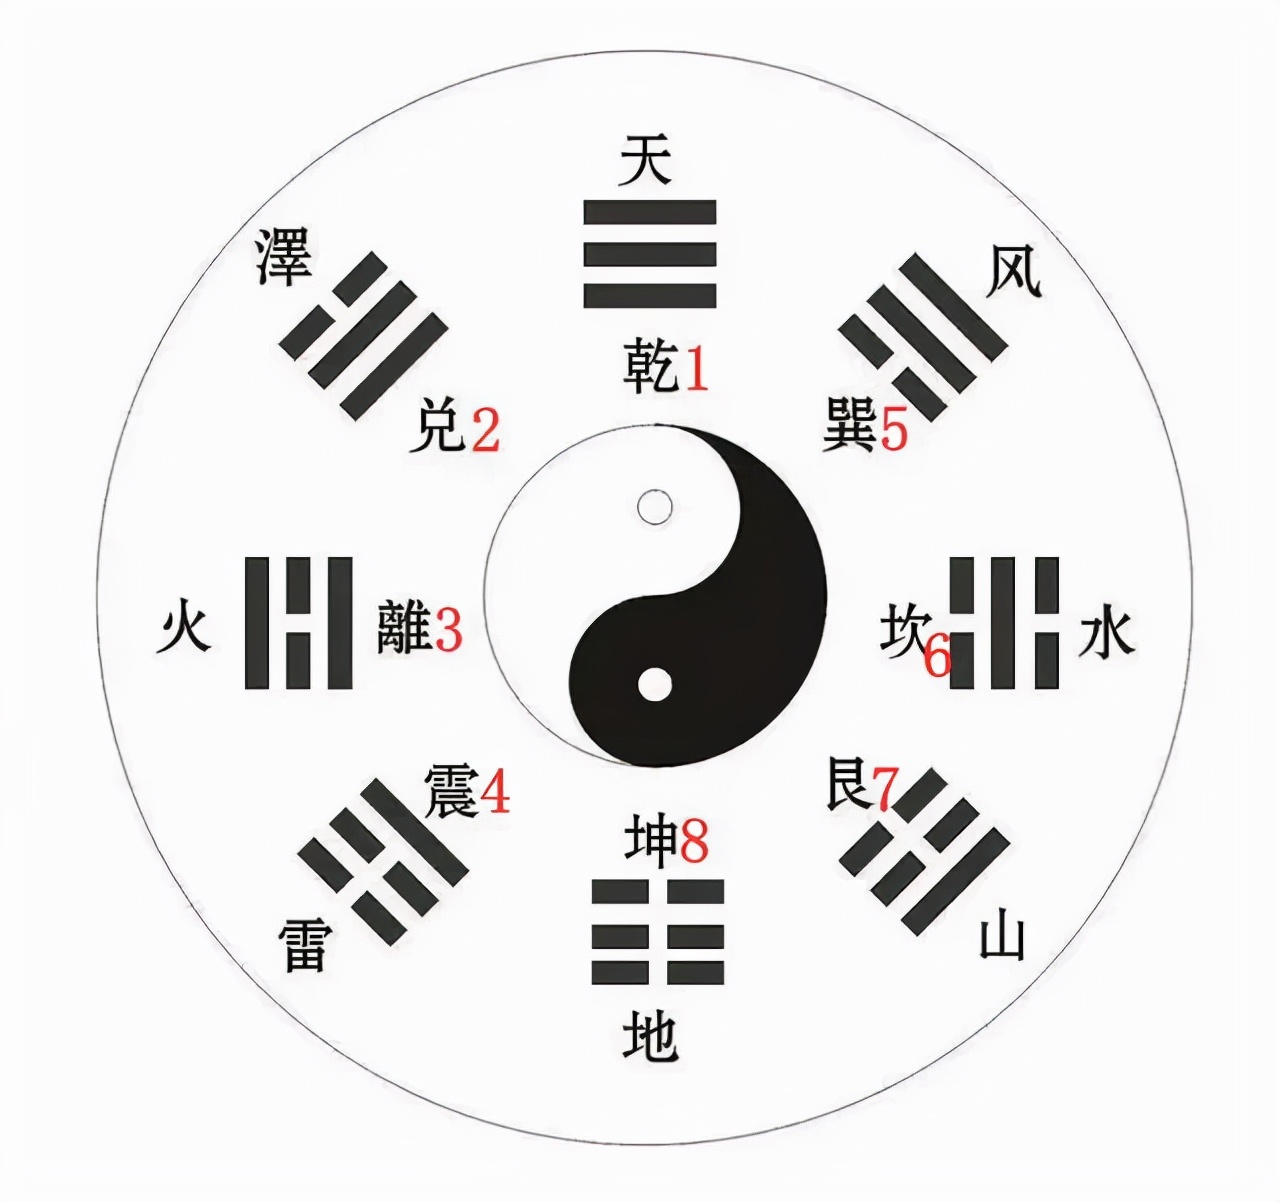 破译《山海经》：四川是中华文化的一极，《易经》坤卦原为川卦